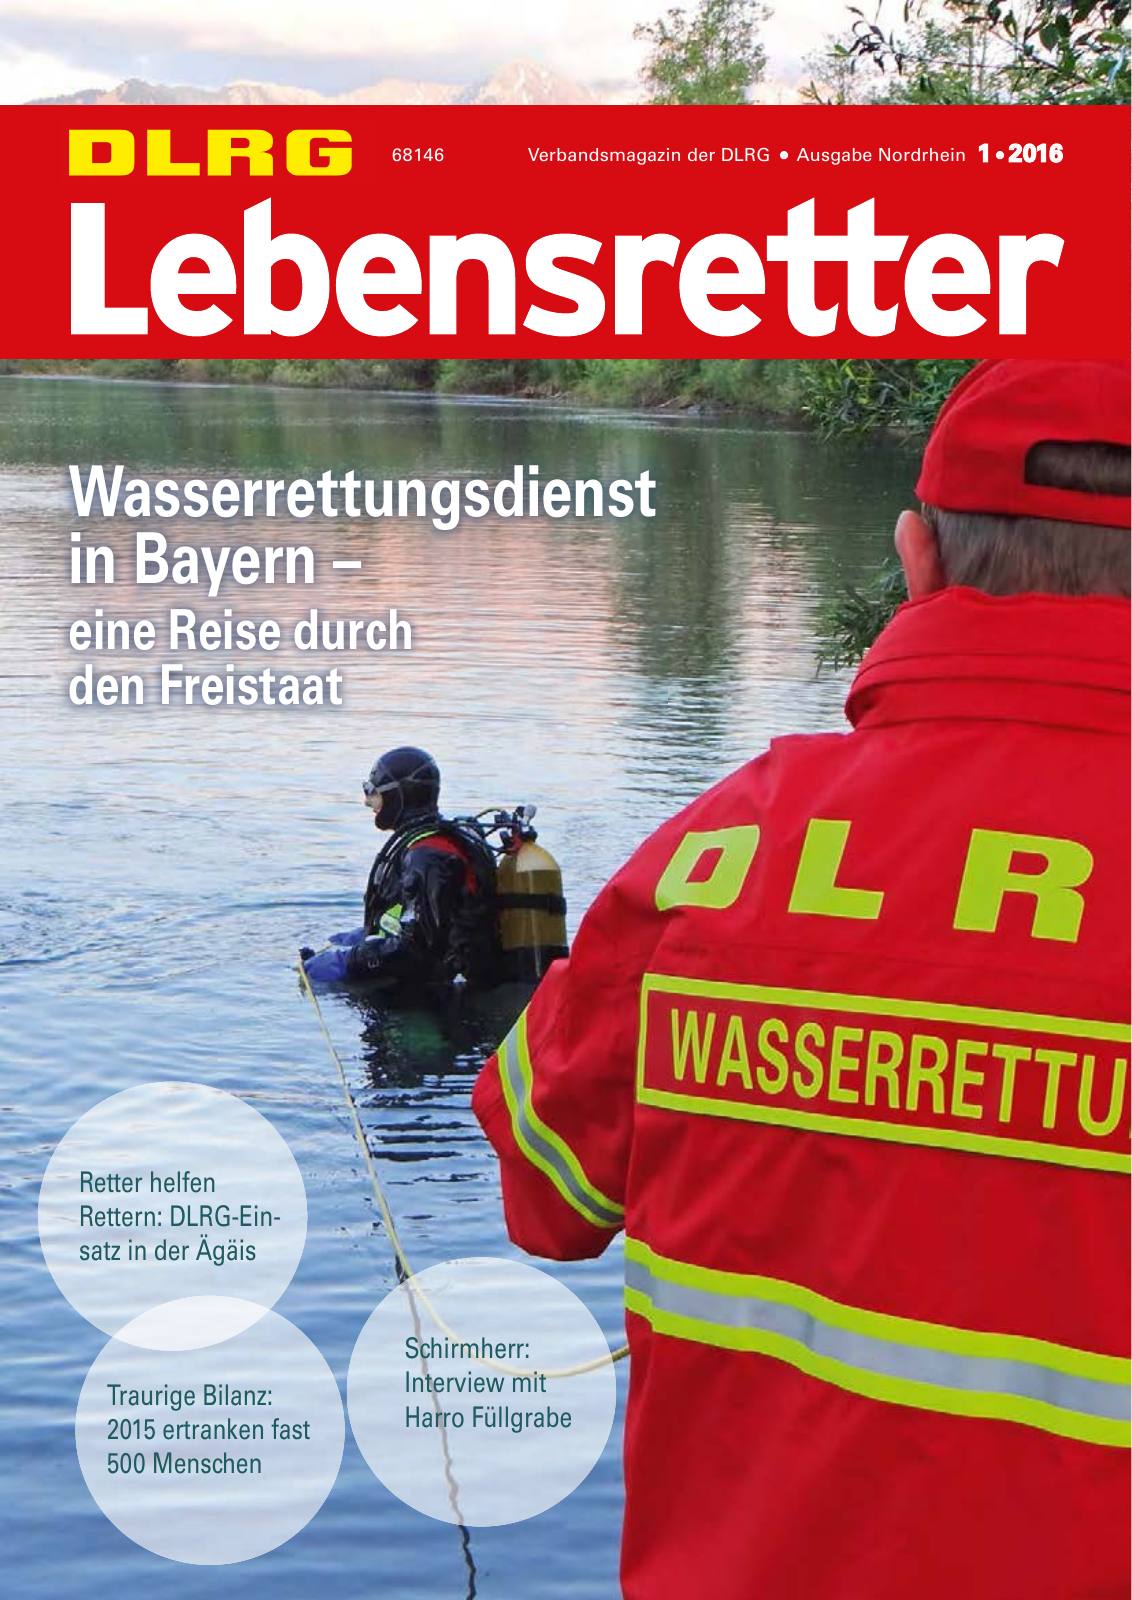 Vorschau Lebensretter 1/2016 - Regionalausgabe Nordrhein Seite 1